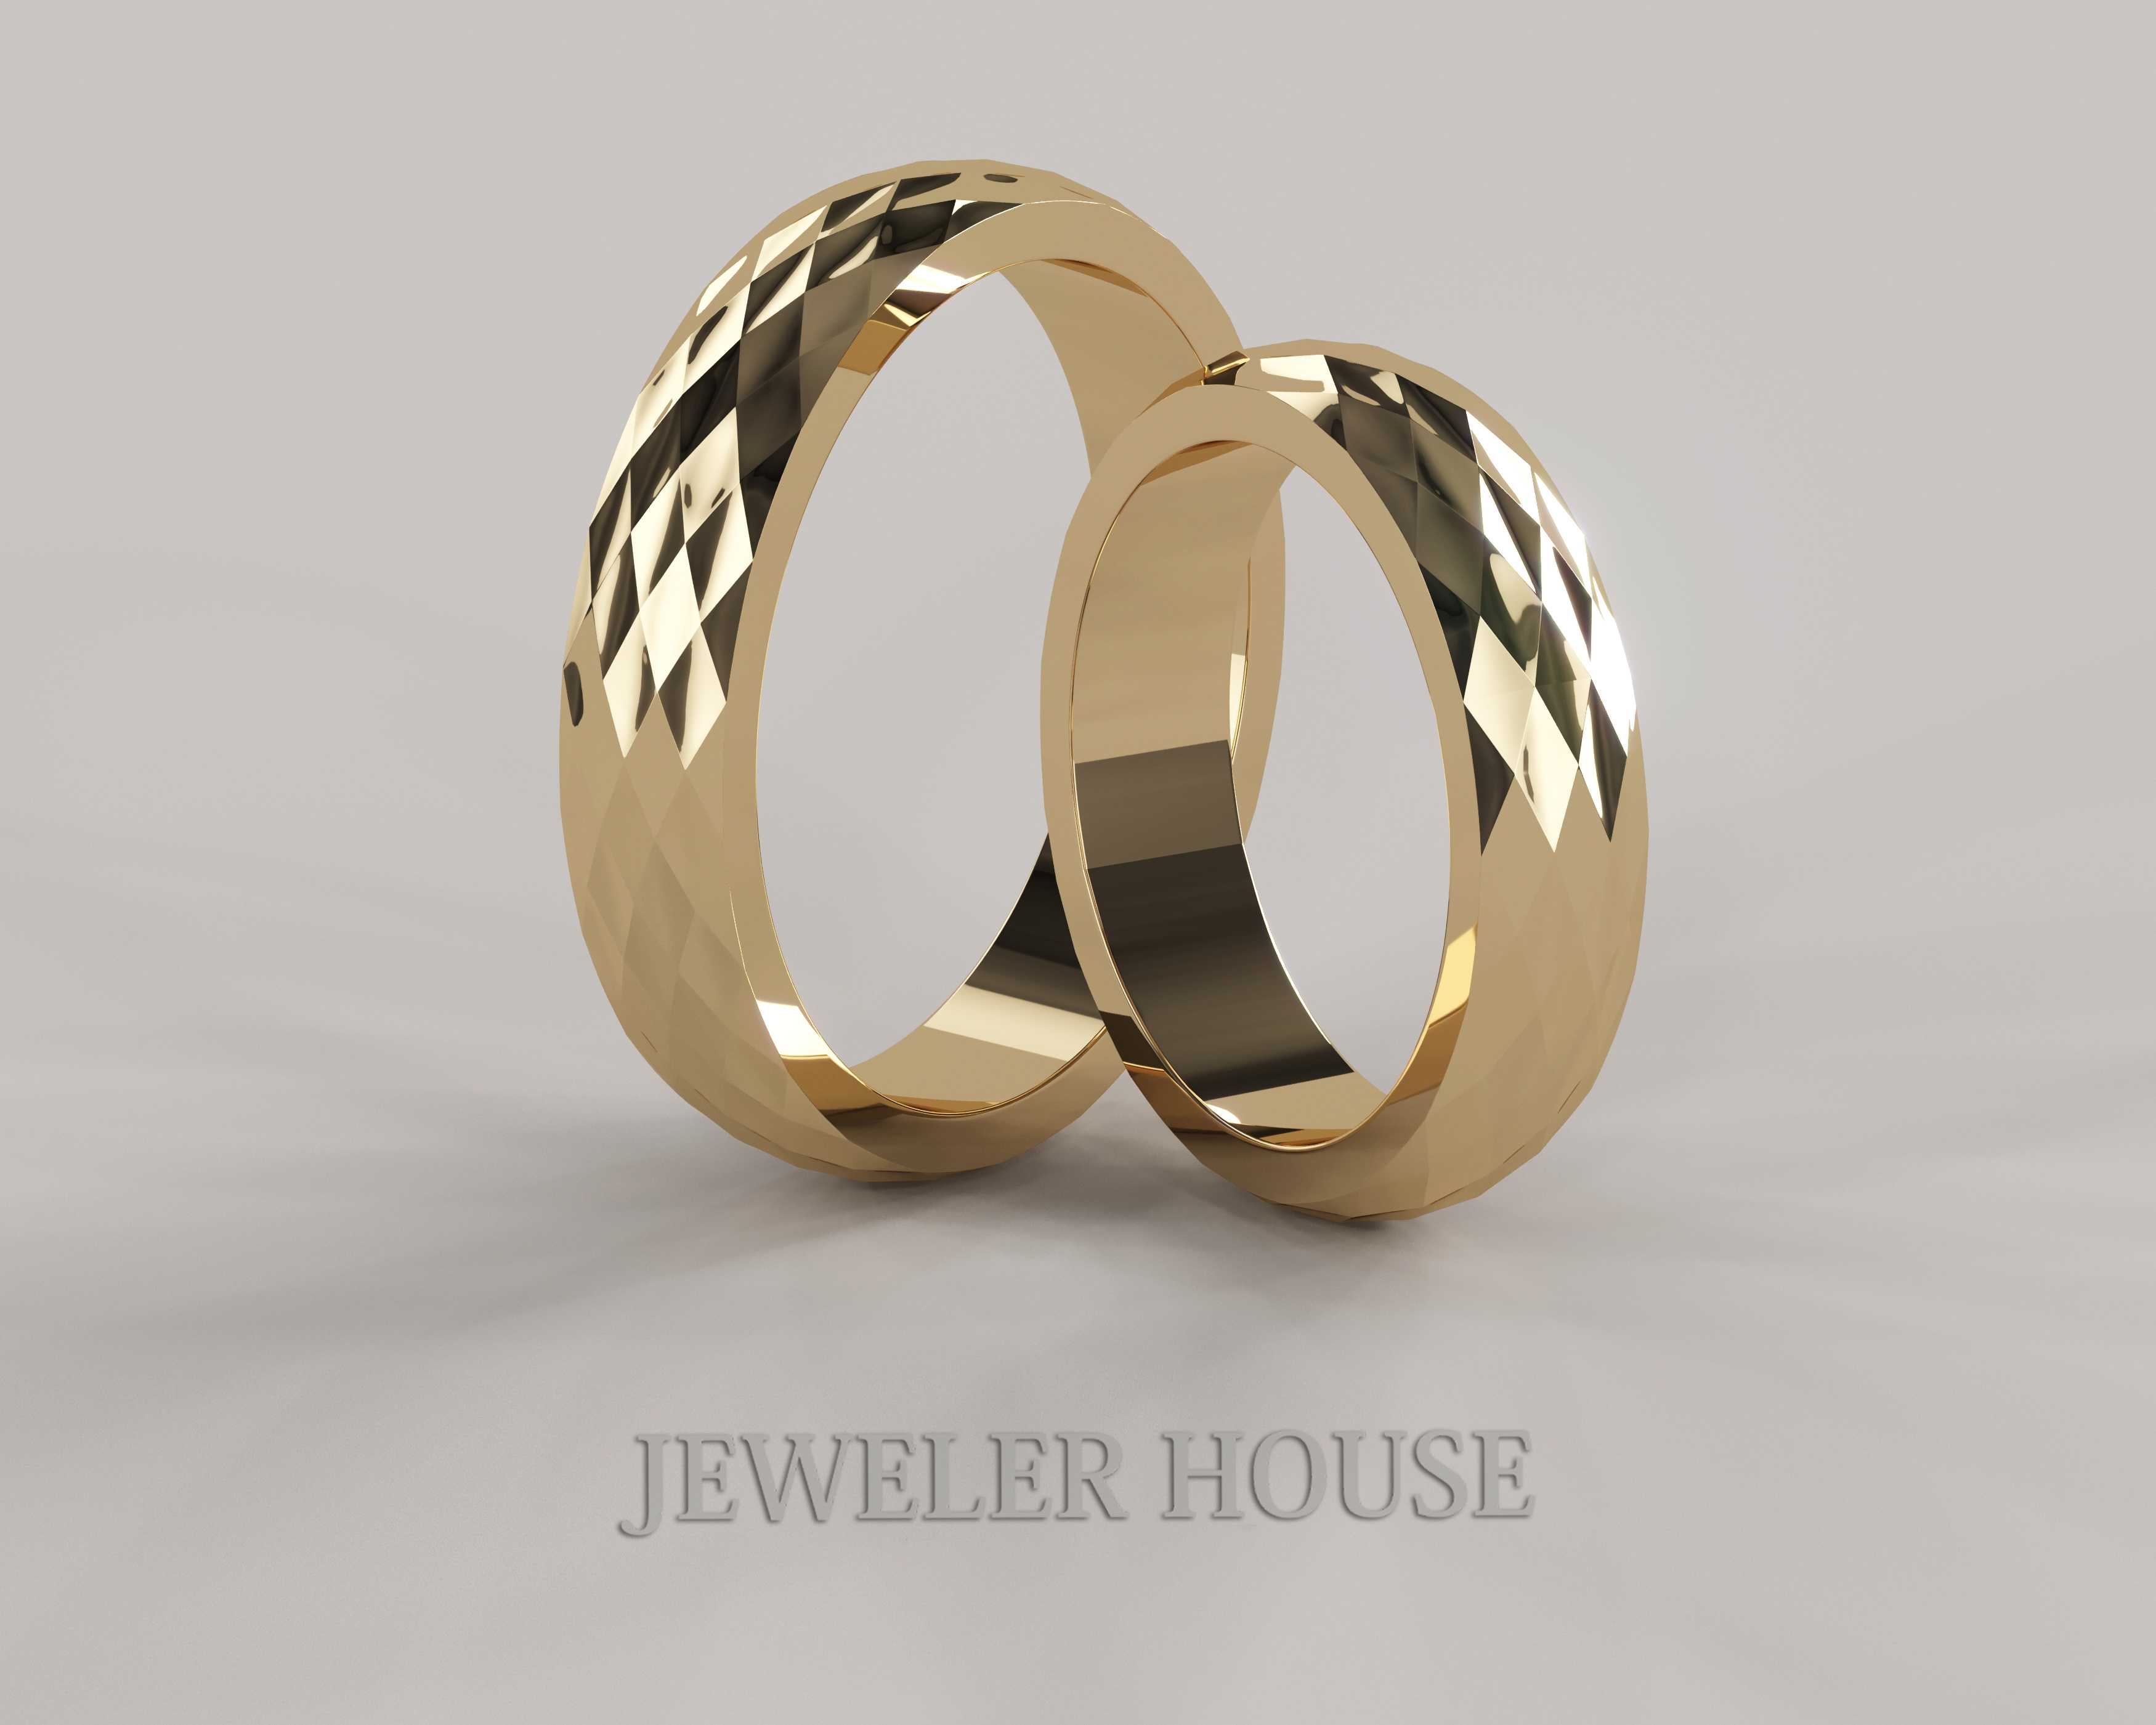 Комбинированное золото - это сплав или сочетание разных видов золота в одном изделии Обручальные кольца из комбинированного золота стильные и изящные